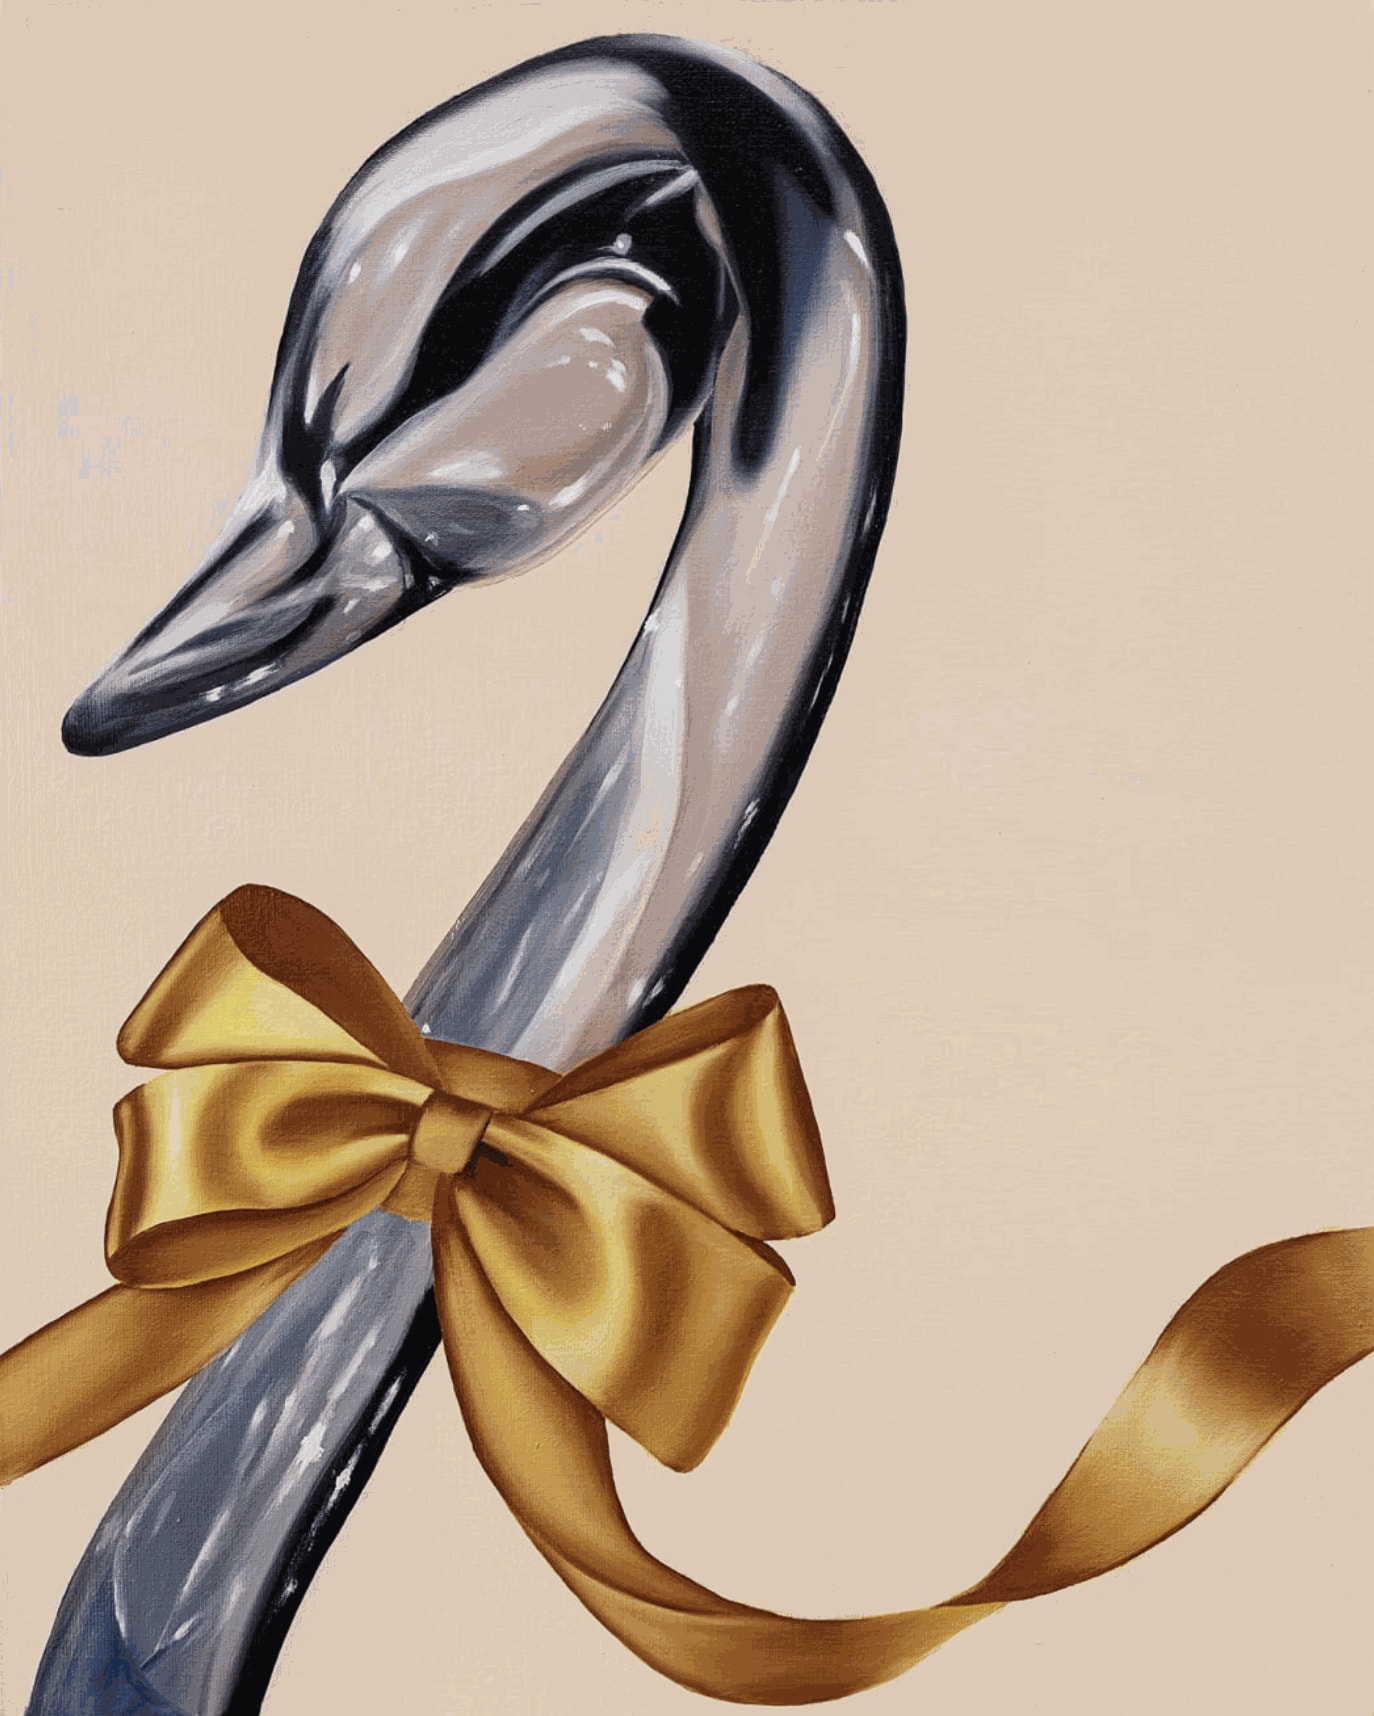 painting of a swan by douglas de souza